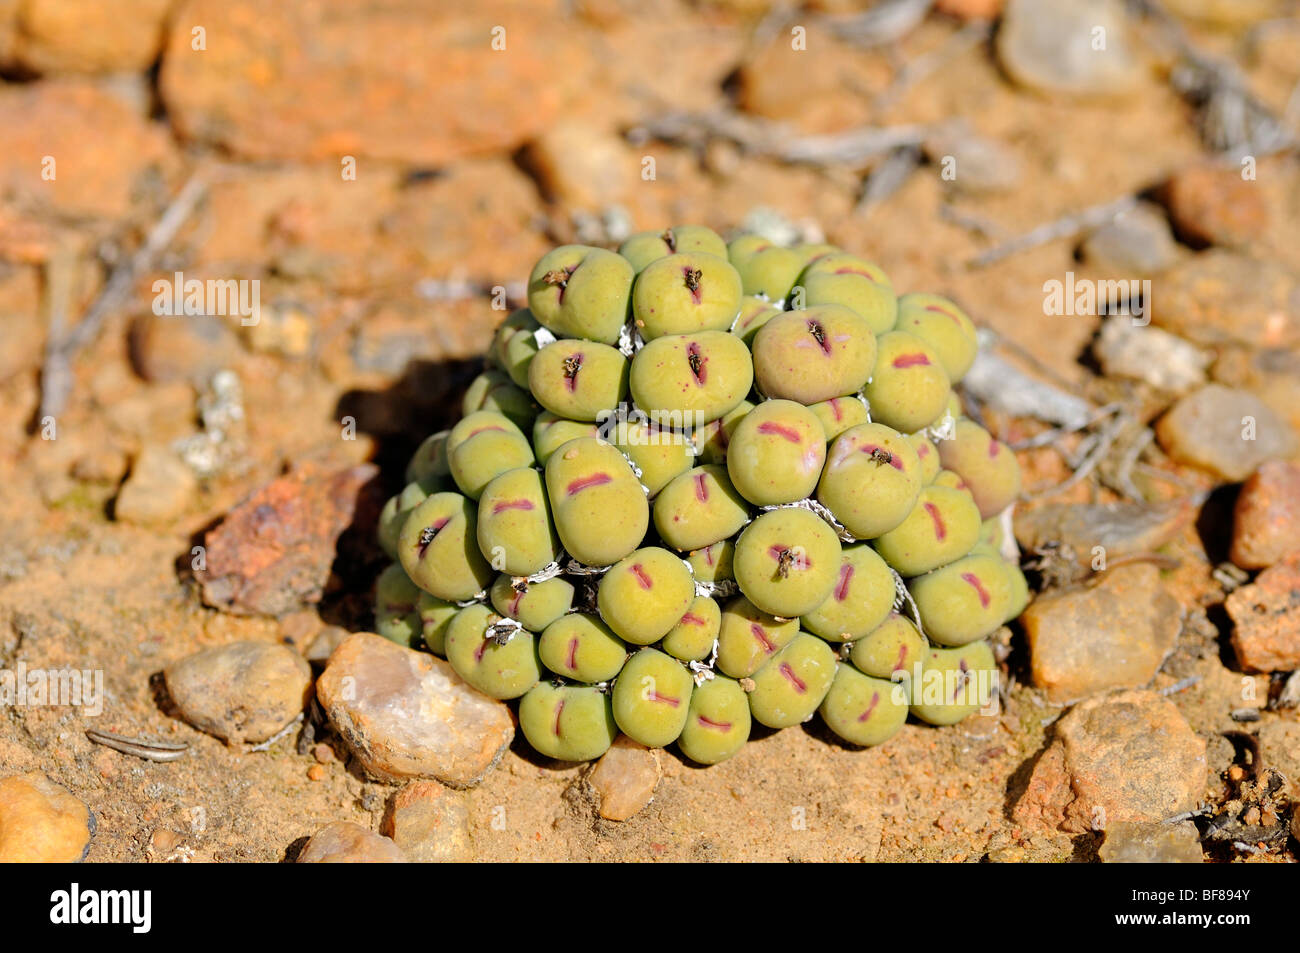 Cushion of Conophytum meyeri in habitat, Namaqualand, South Africa Stock Photo